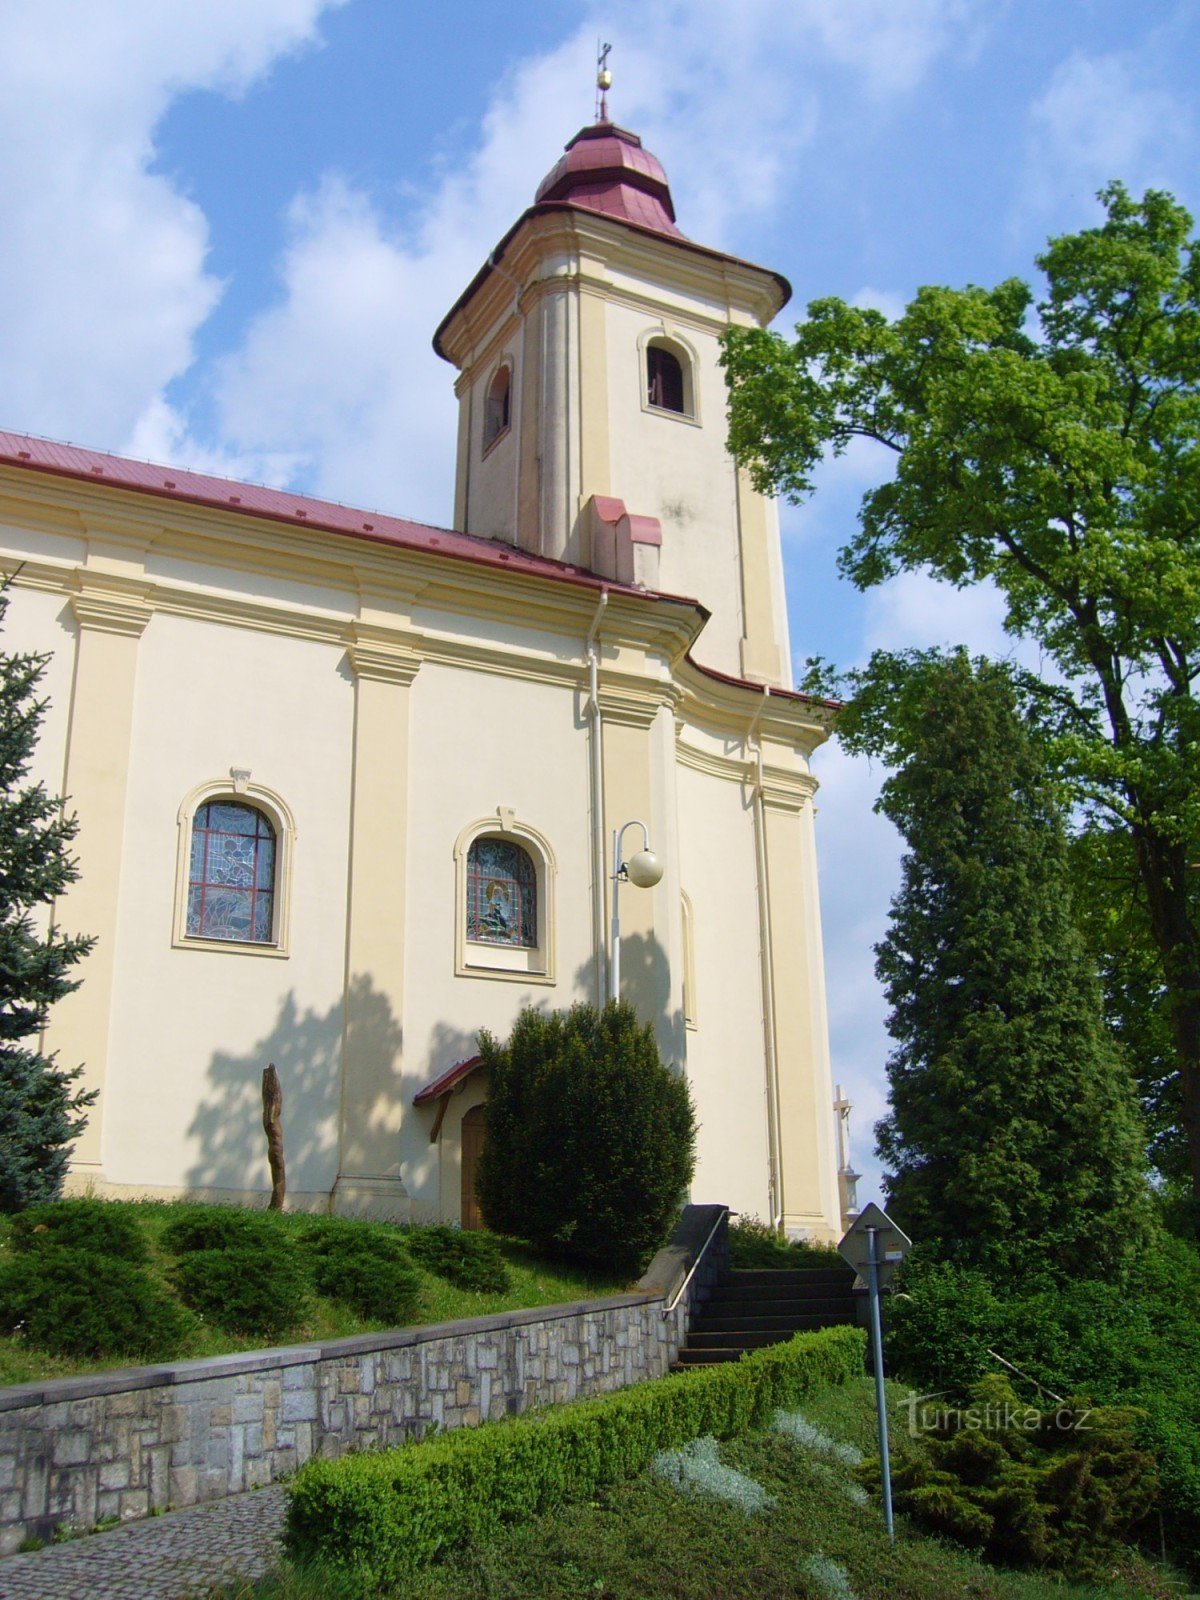 Plesná - Szent István-templom. Jakub